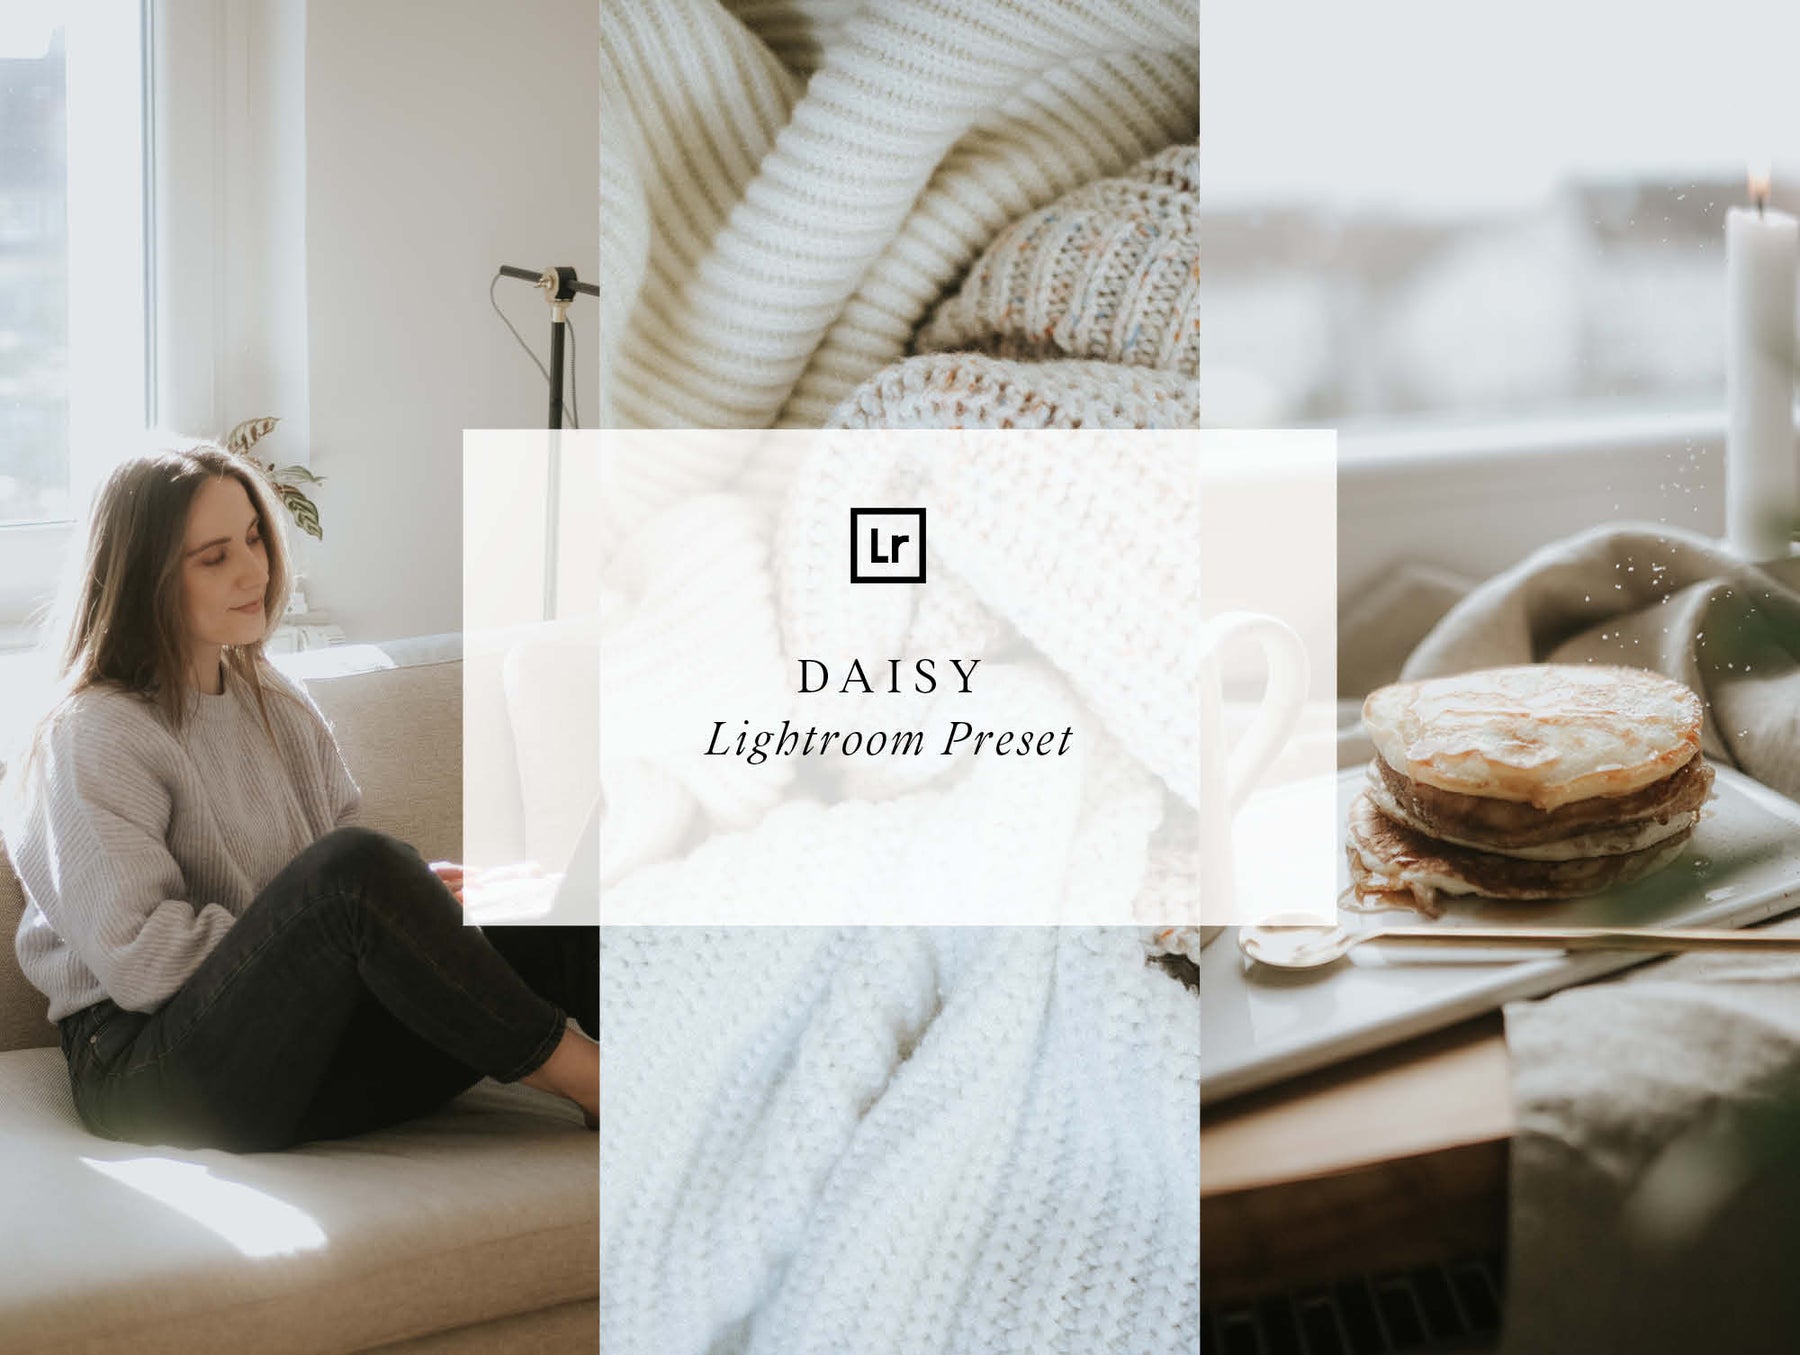 Lightroom Preset "Daisy"